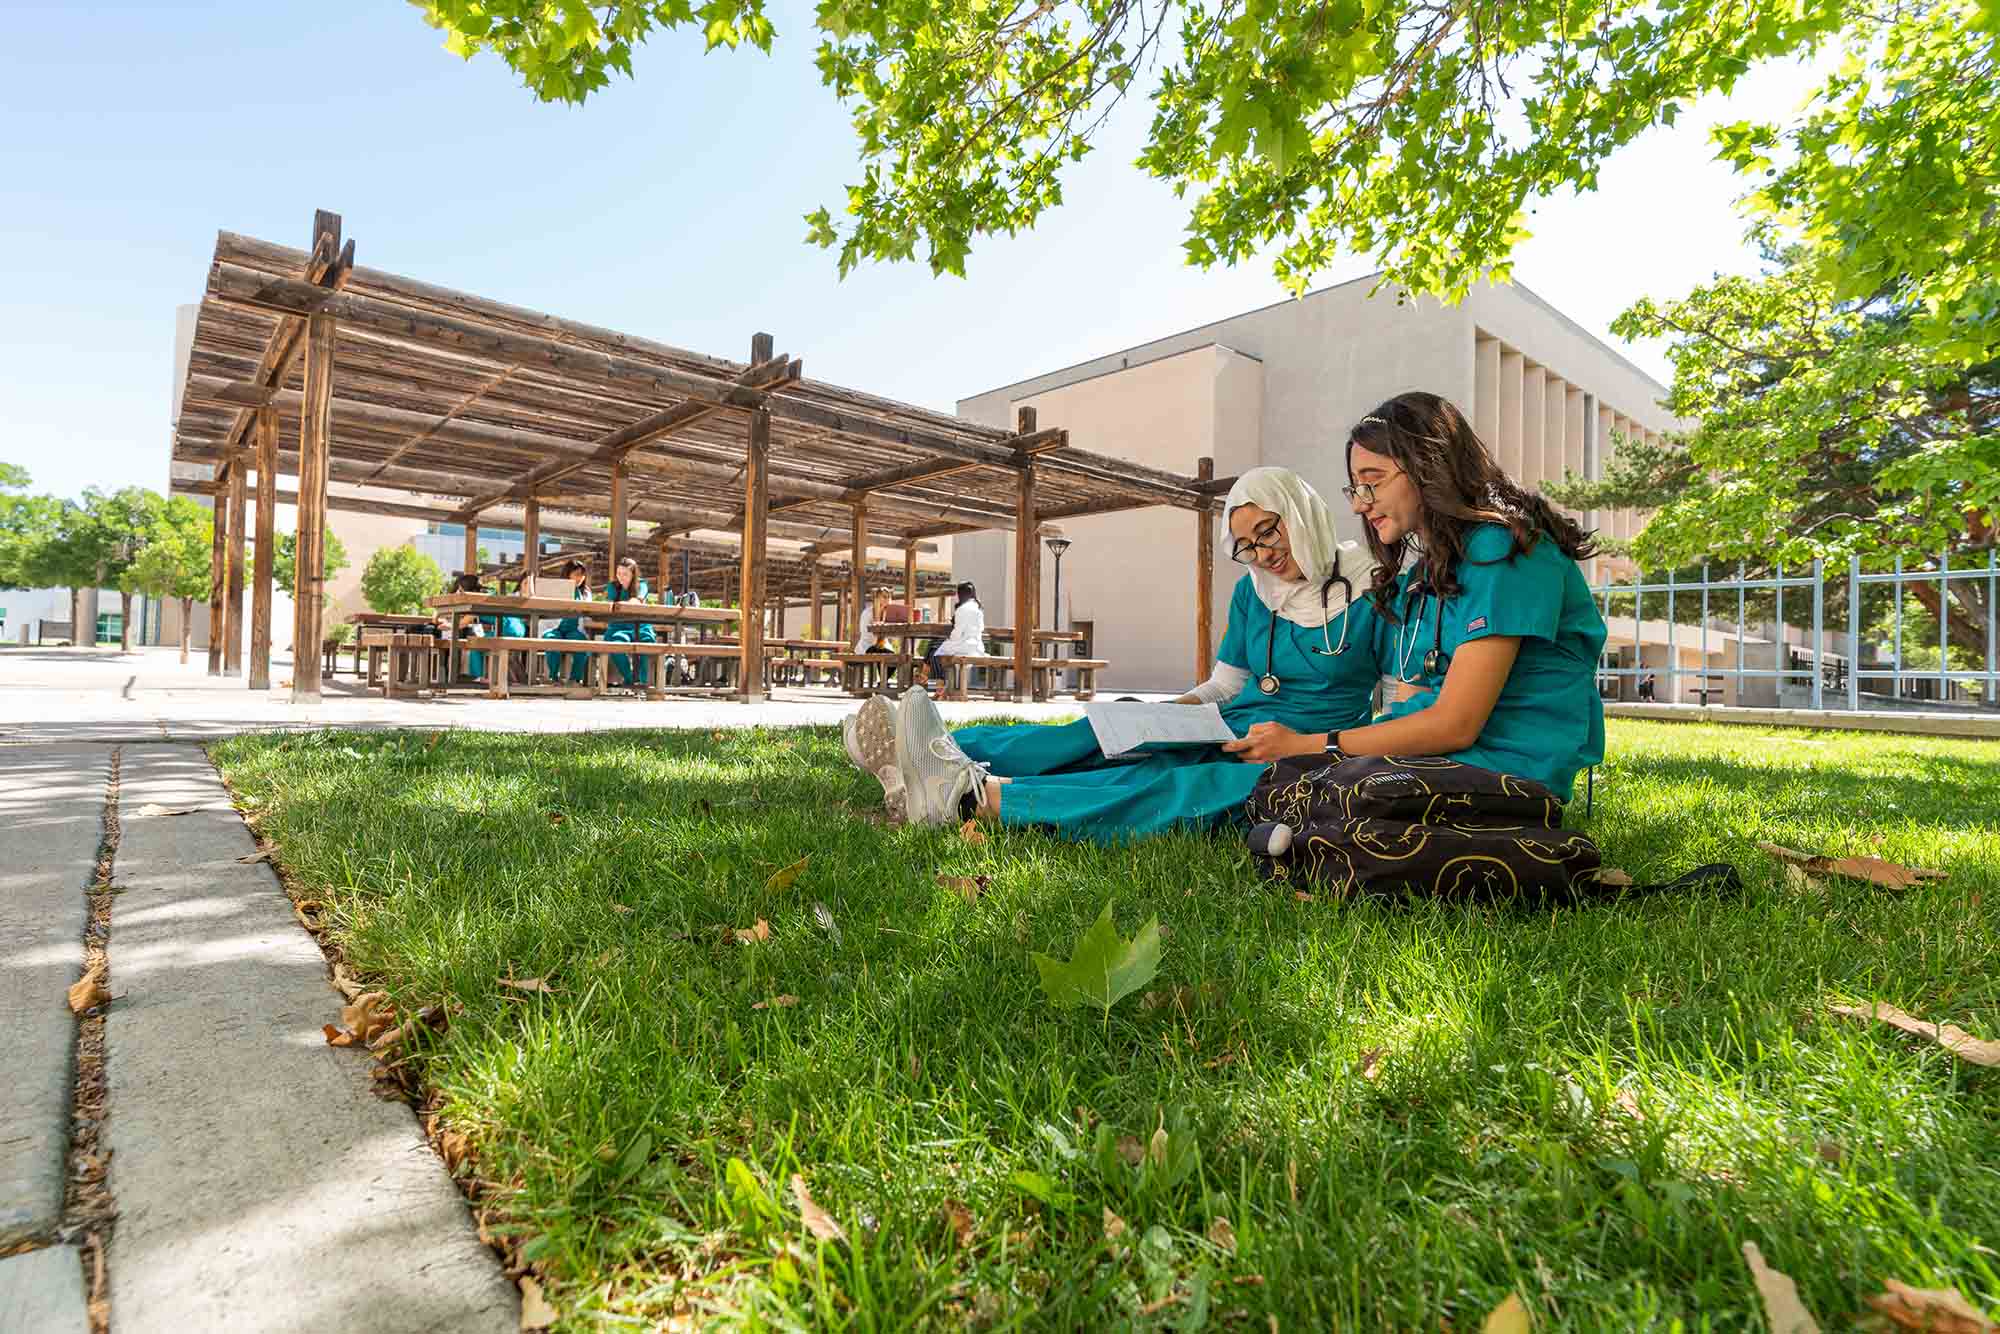 दो नर्सिंग छात्र घास पर पढ़ रहे हैं।